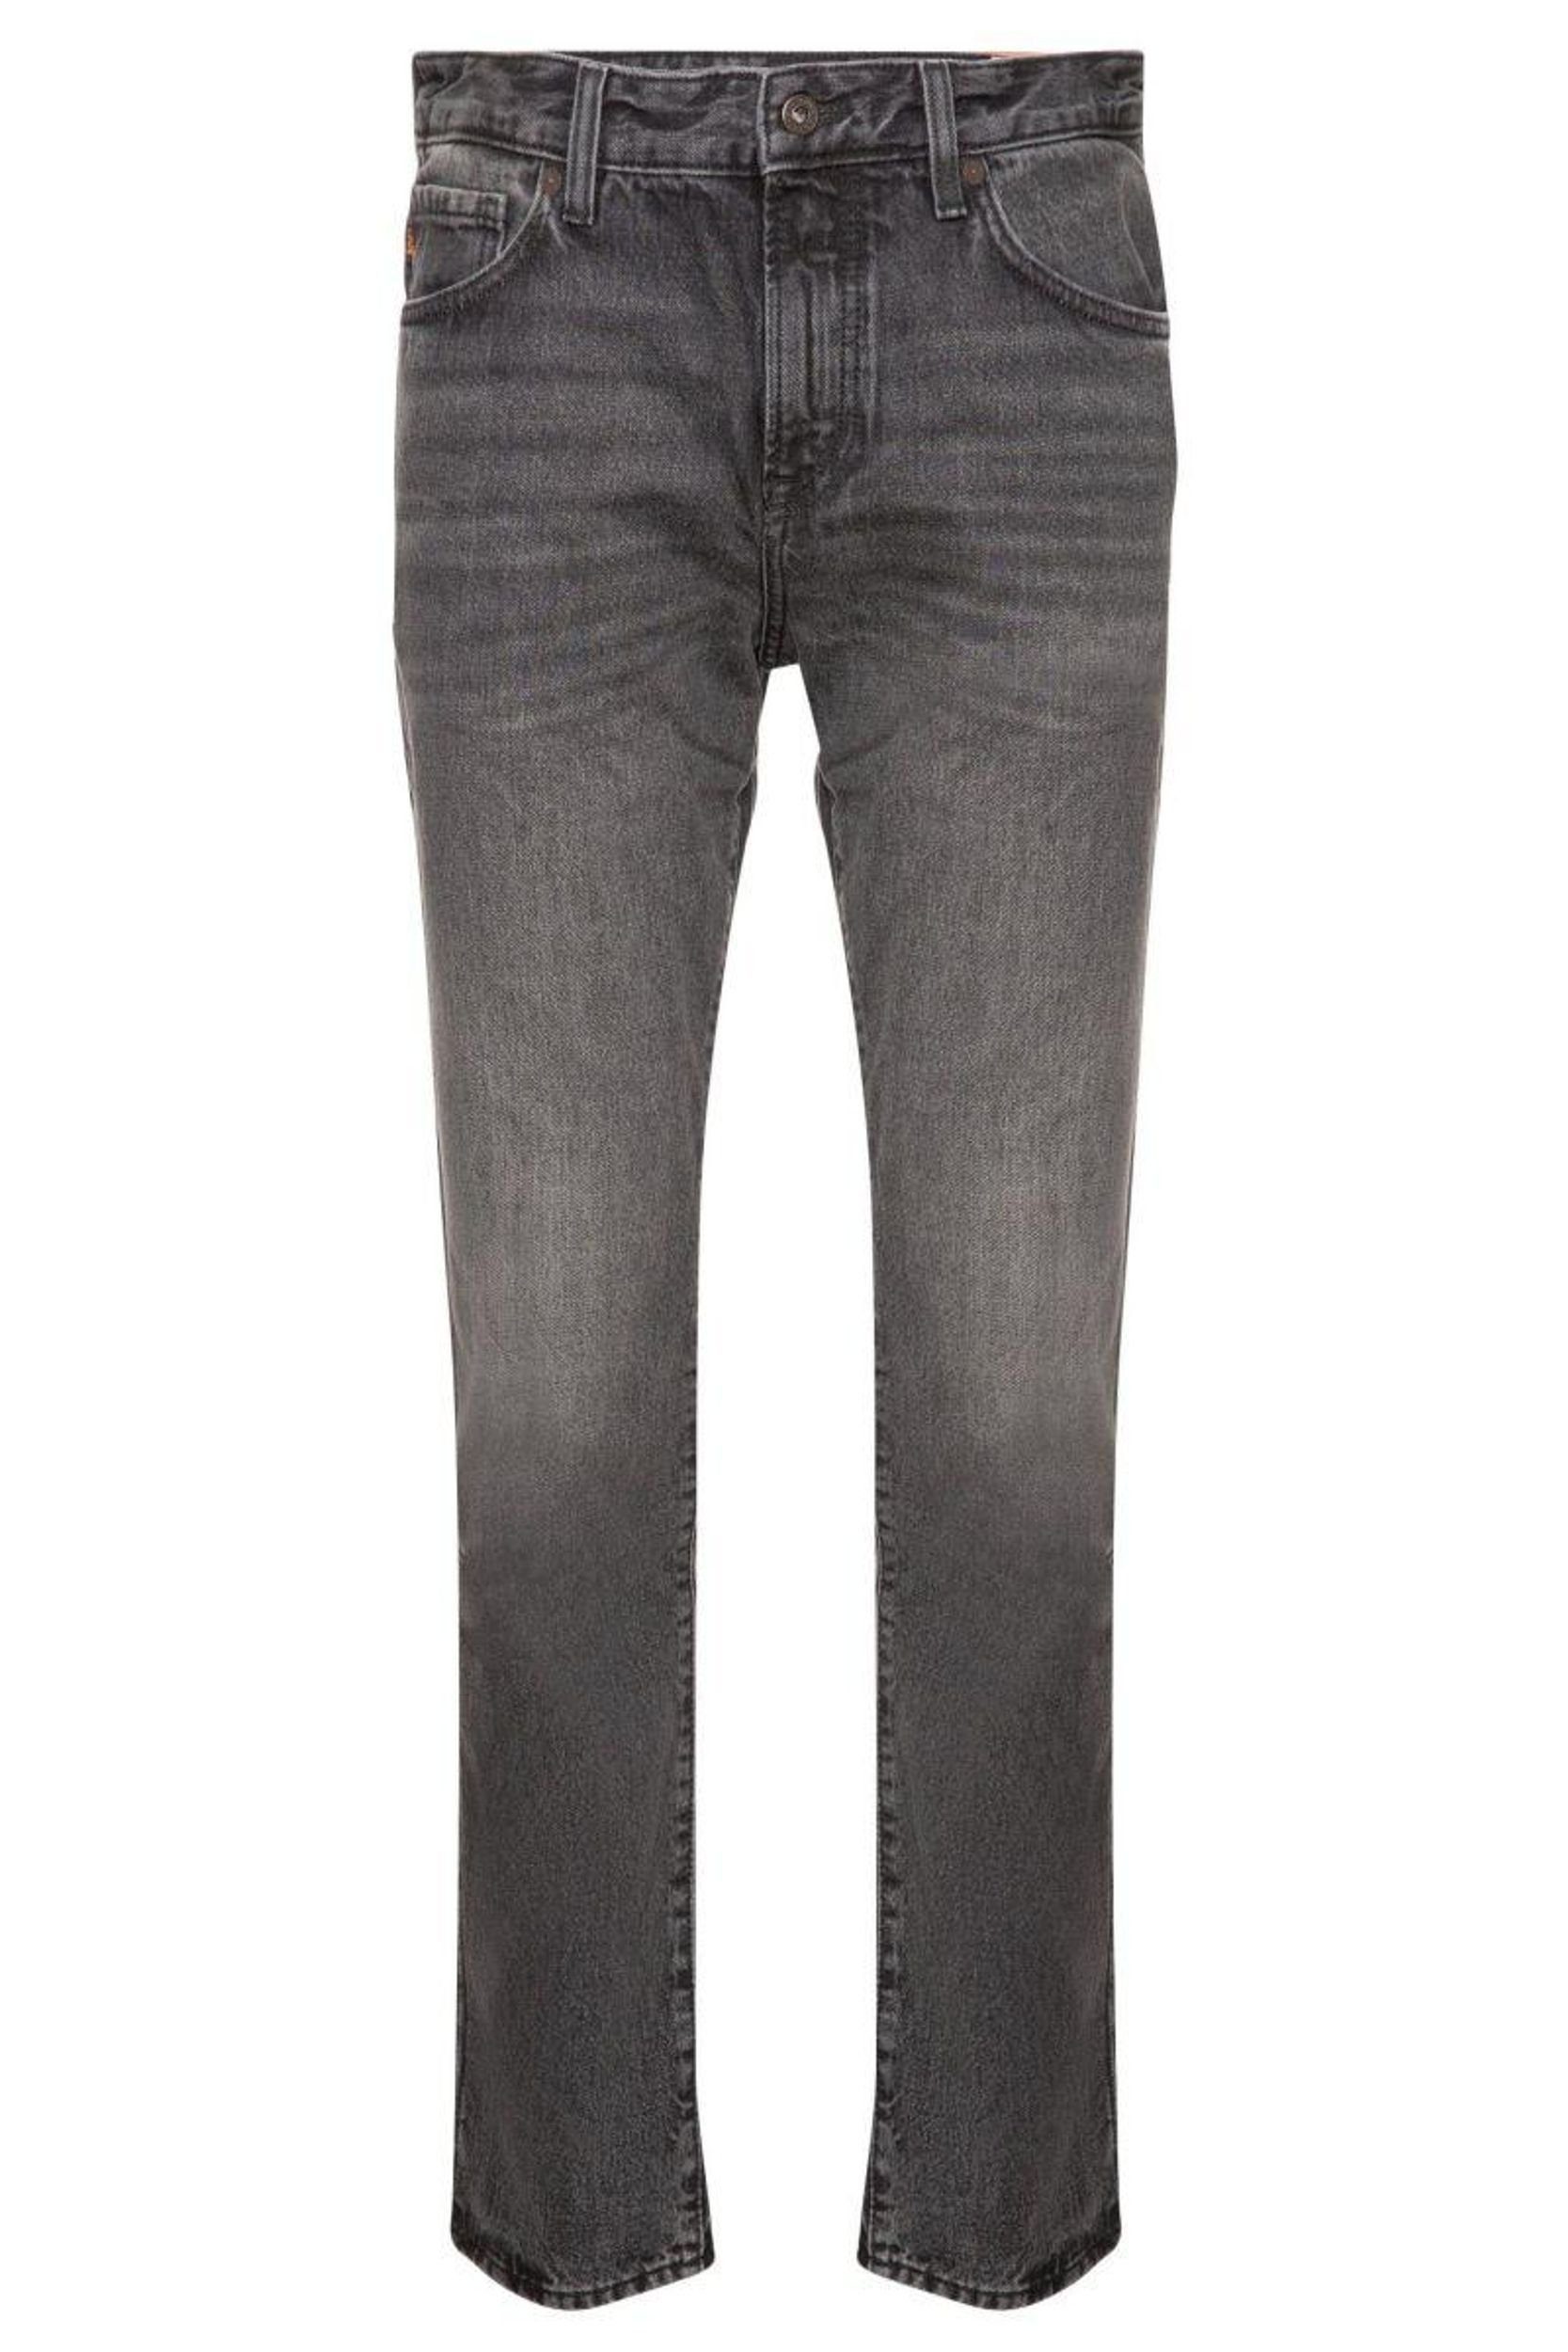 BOSS ORANGE Slim-fit-Jeans BOSS ORANGE 5-Pocket-Jeans